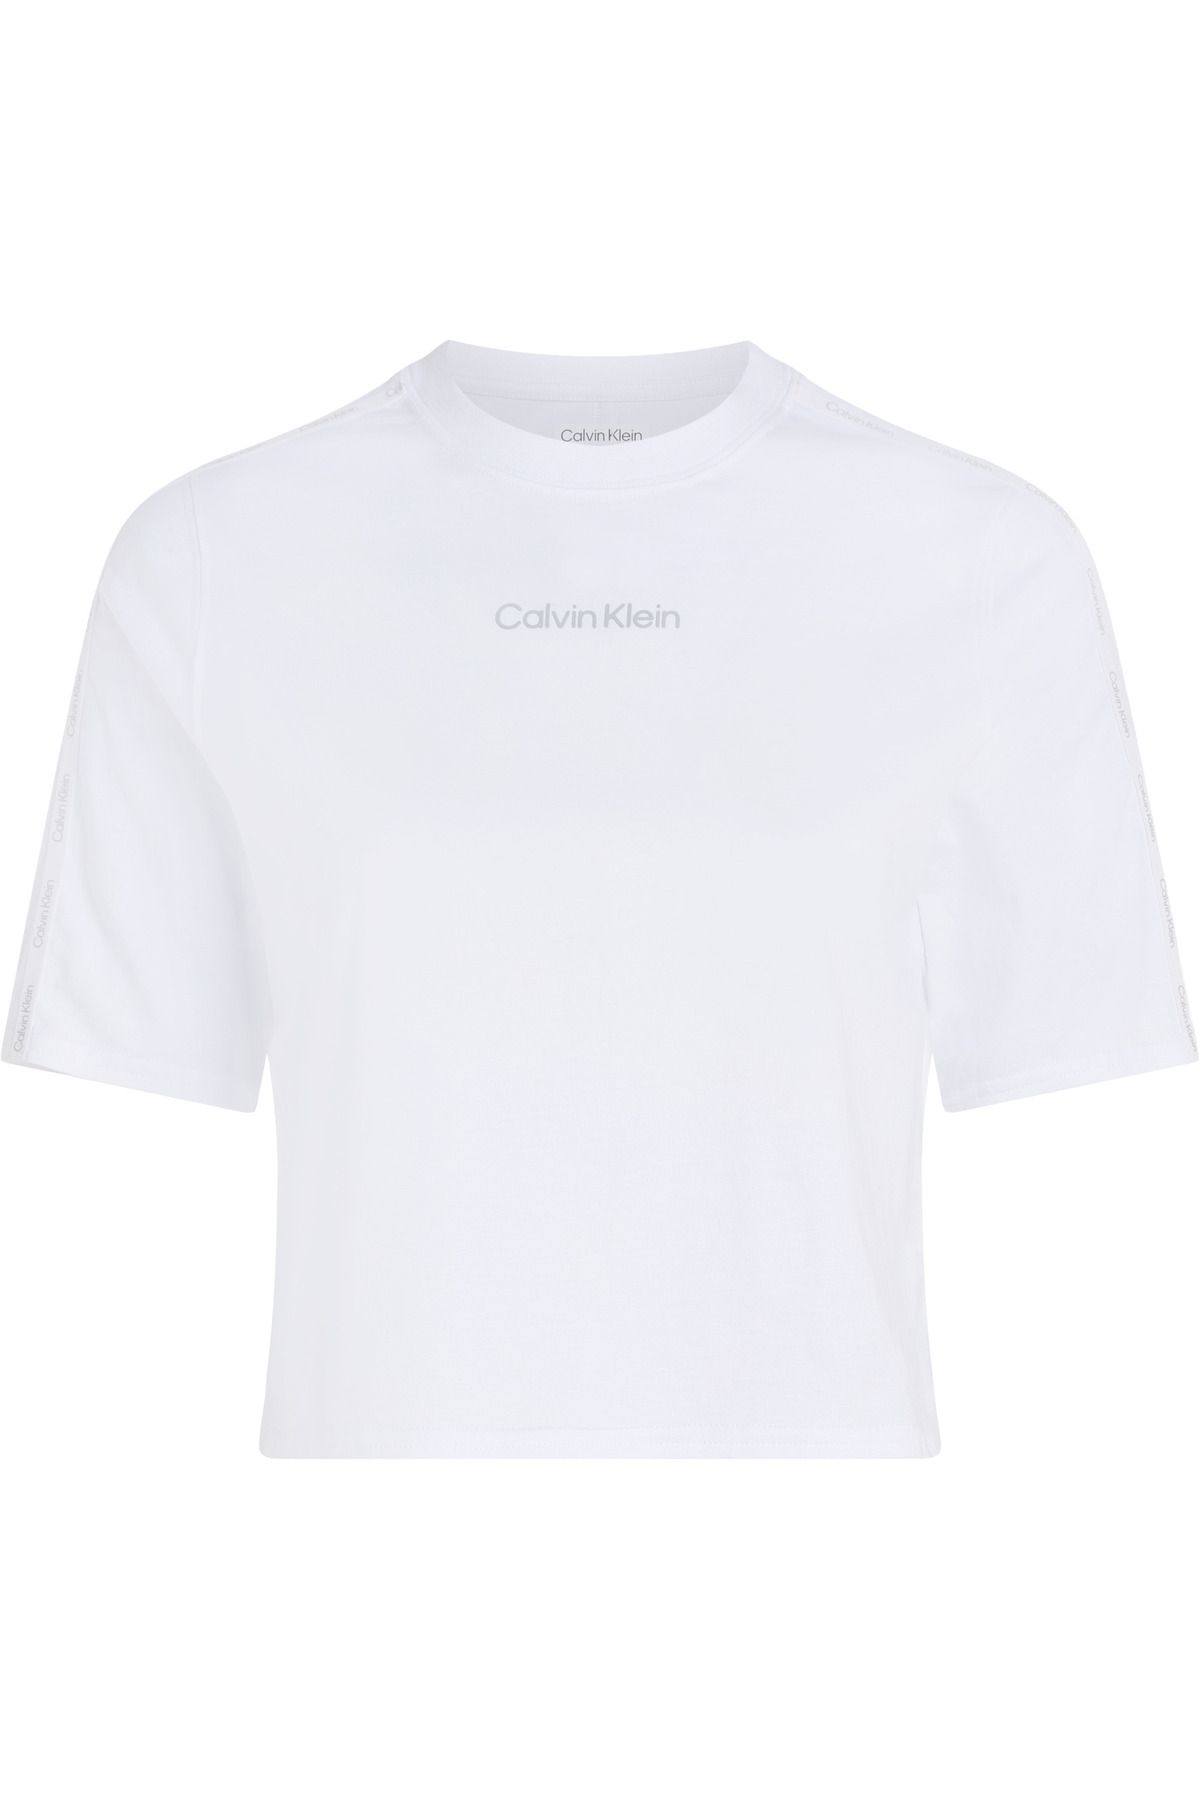 Calvin Klein Kadın Kol Ve Göğüs Kısmında Marka Logolu Pamuklu Bisiklet Yakalı Nem Emici Kumaşlı Beyaz T-shirt 00